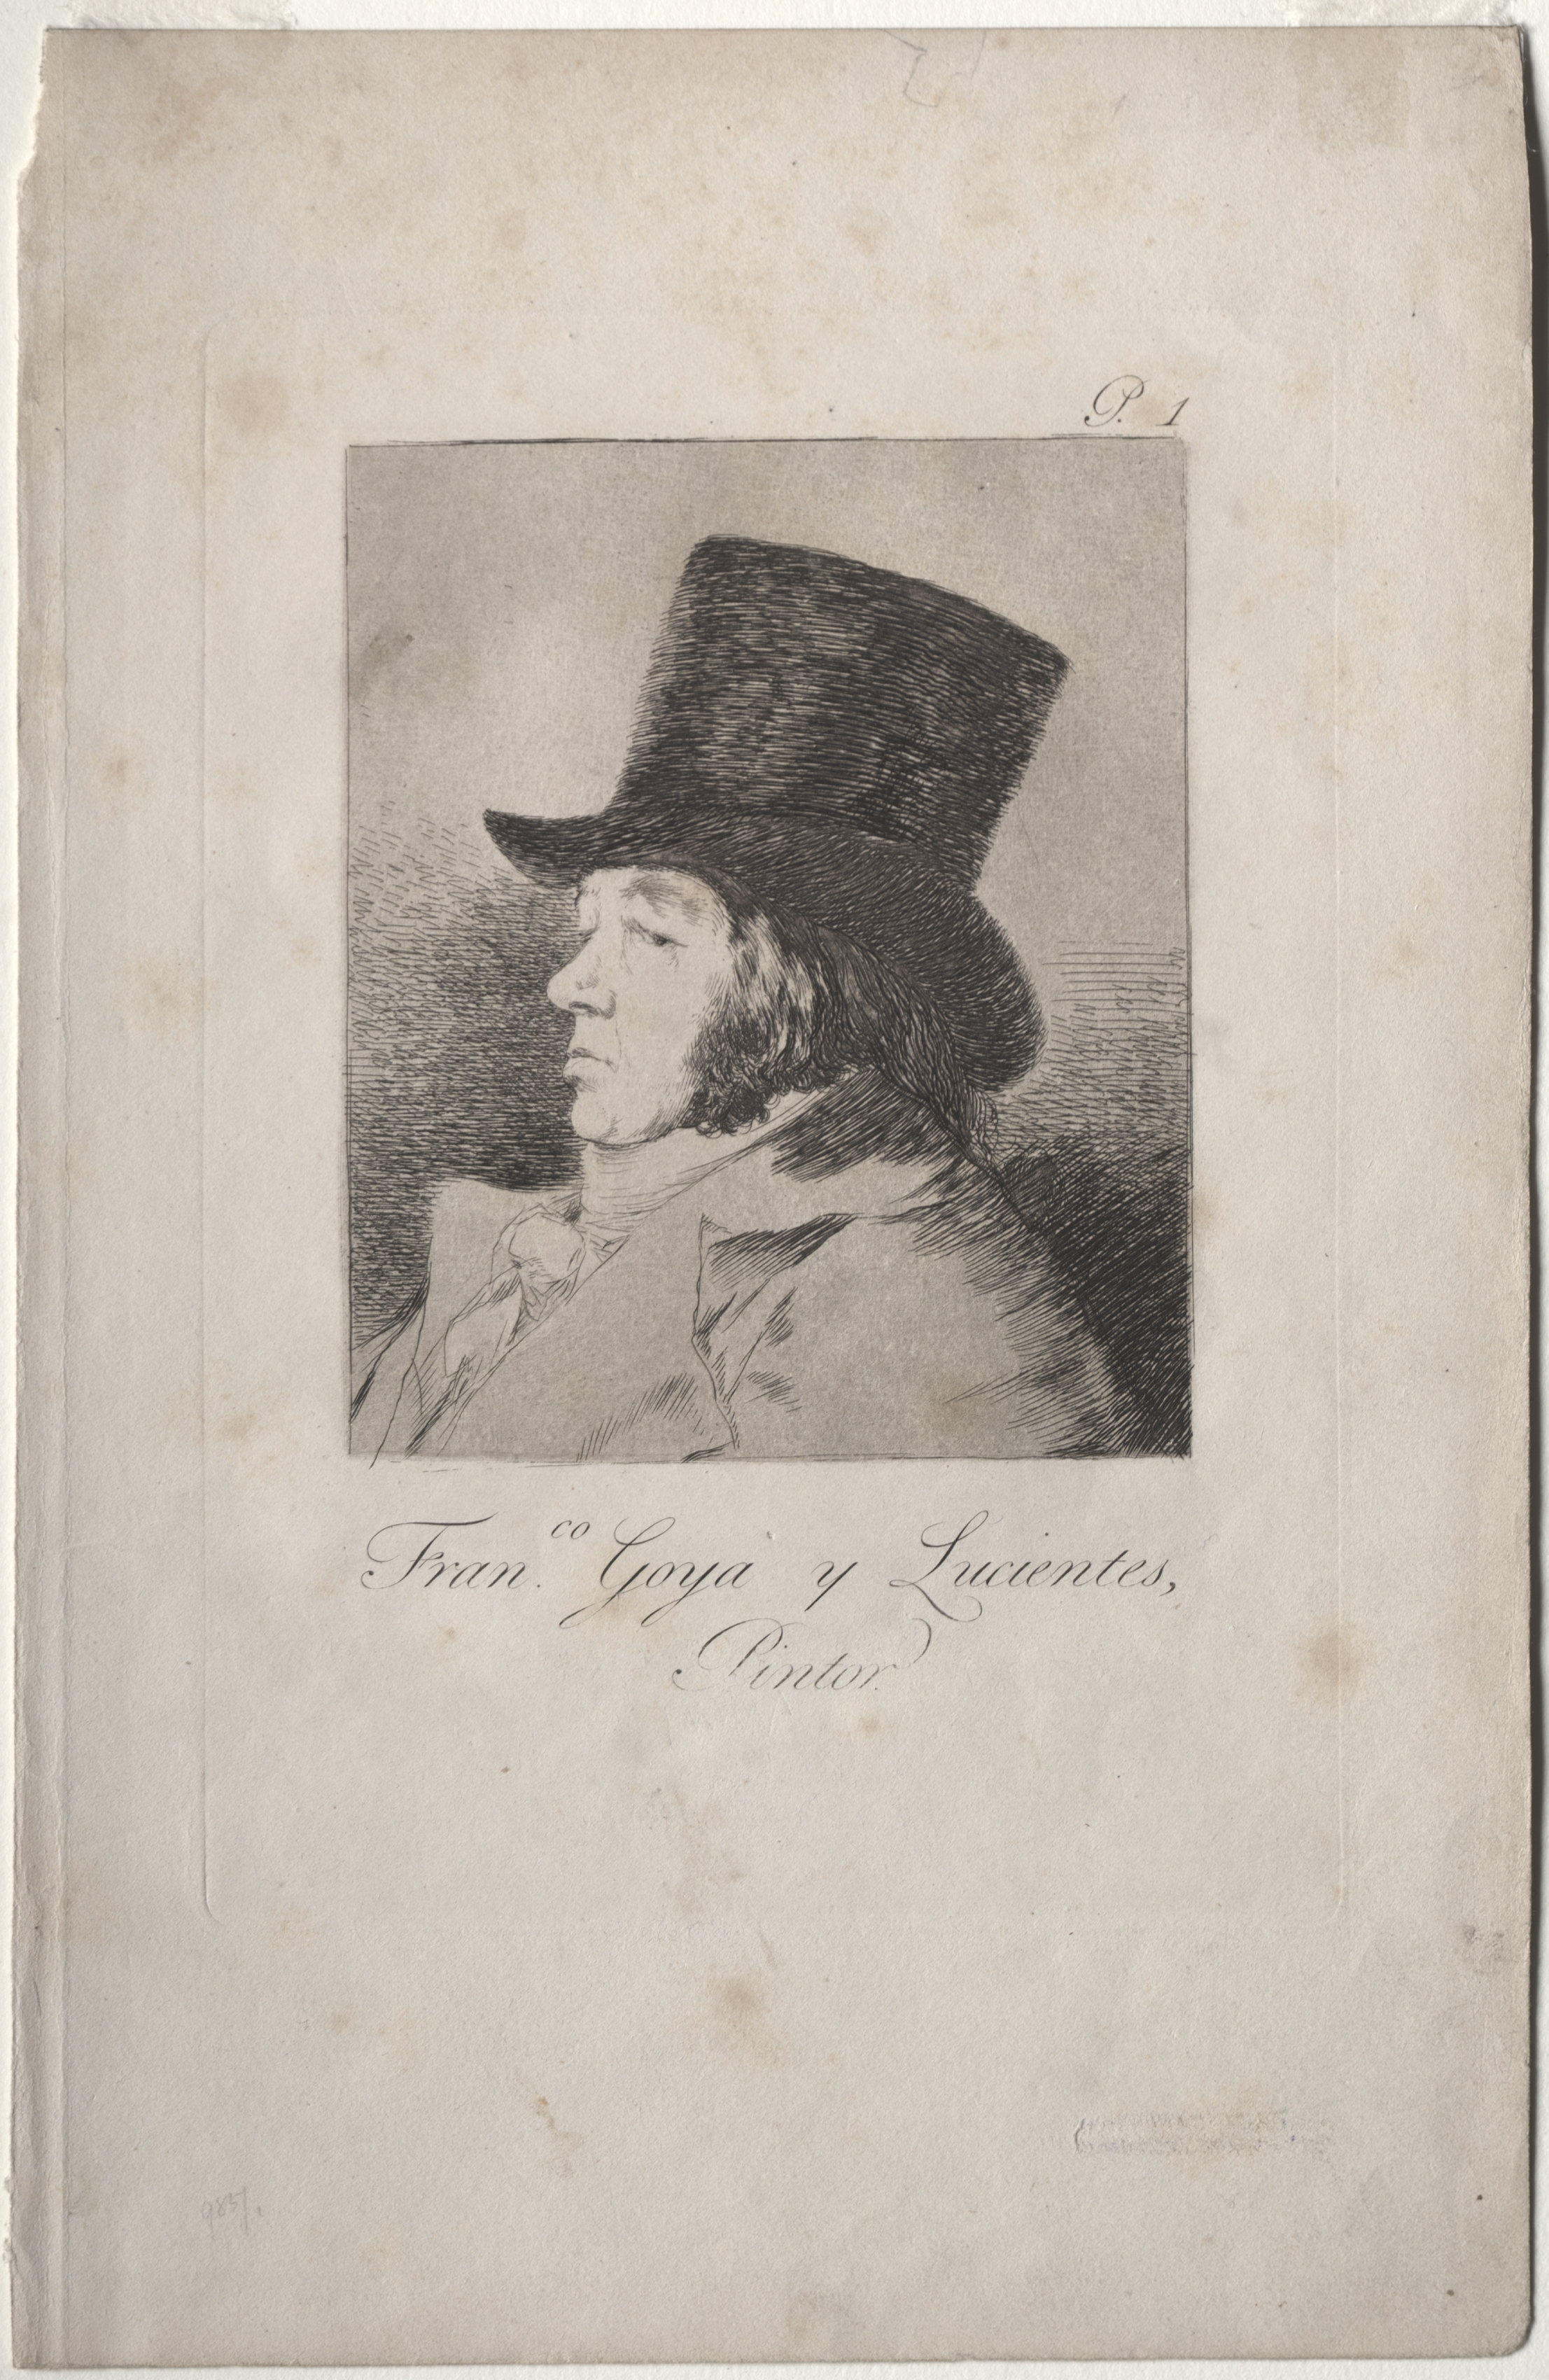 Francisco de Goya y Lucientes, Painter (Self-Portrait), Plate 1